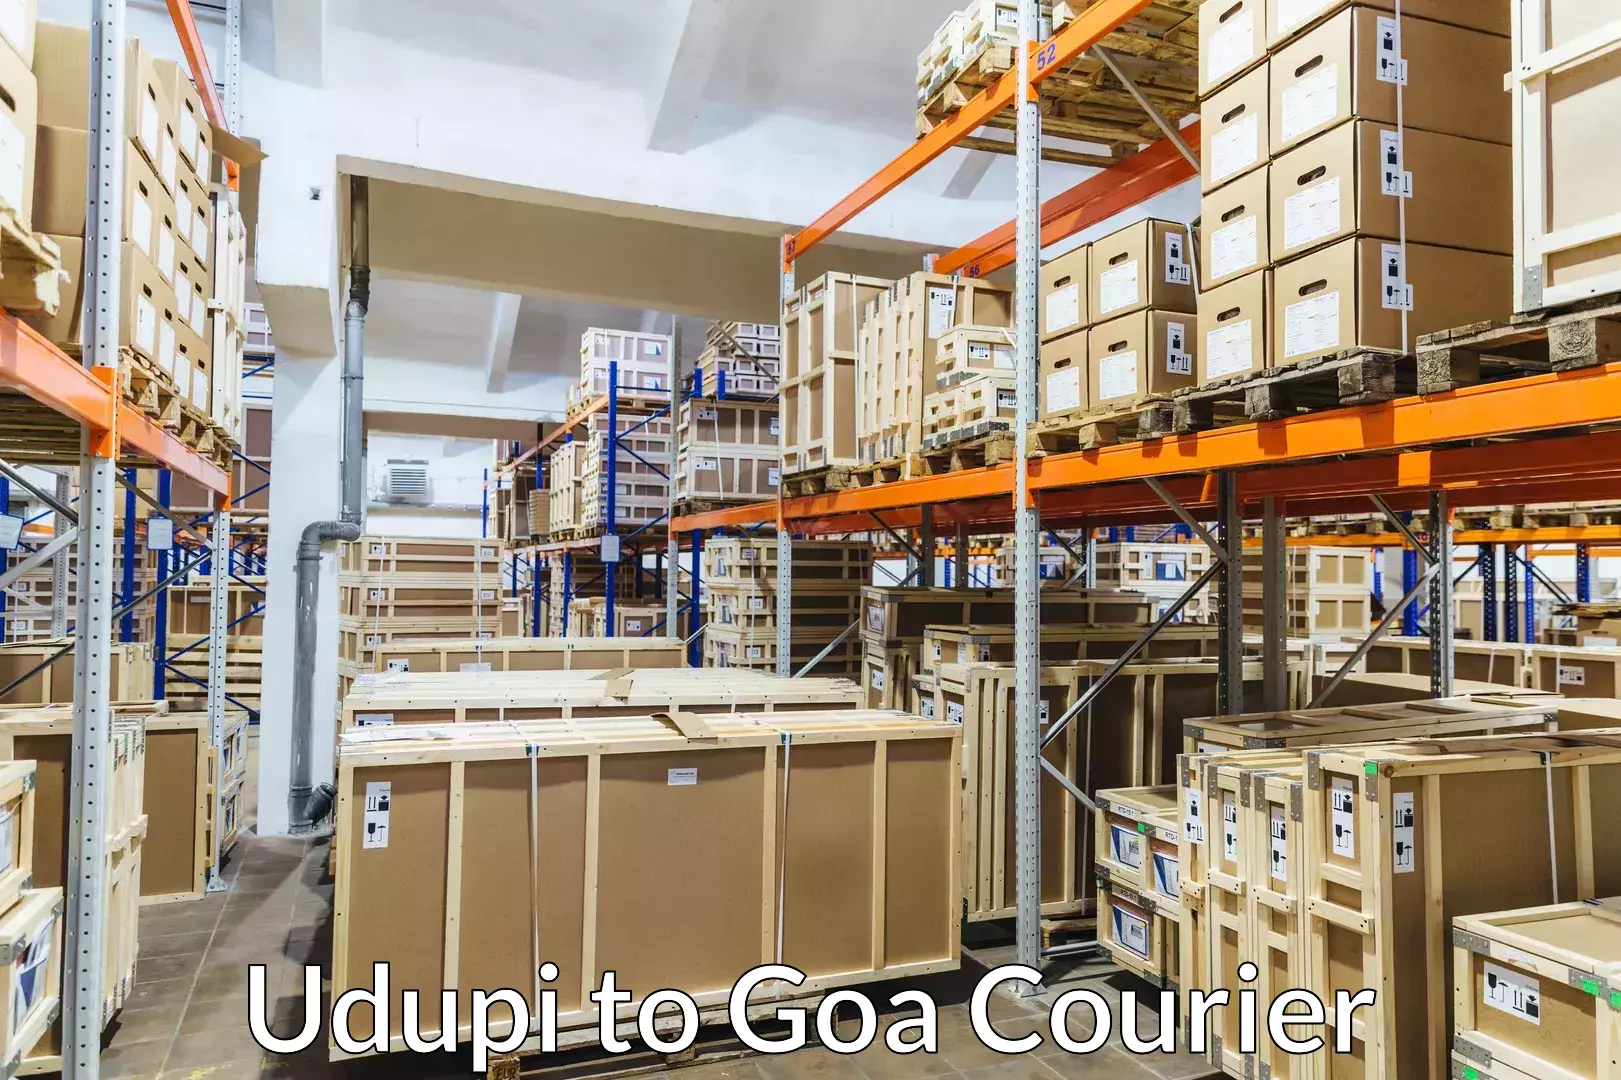 Luggage shipment strategy Udupi to Goa